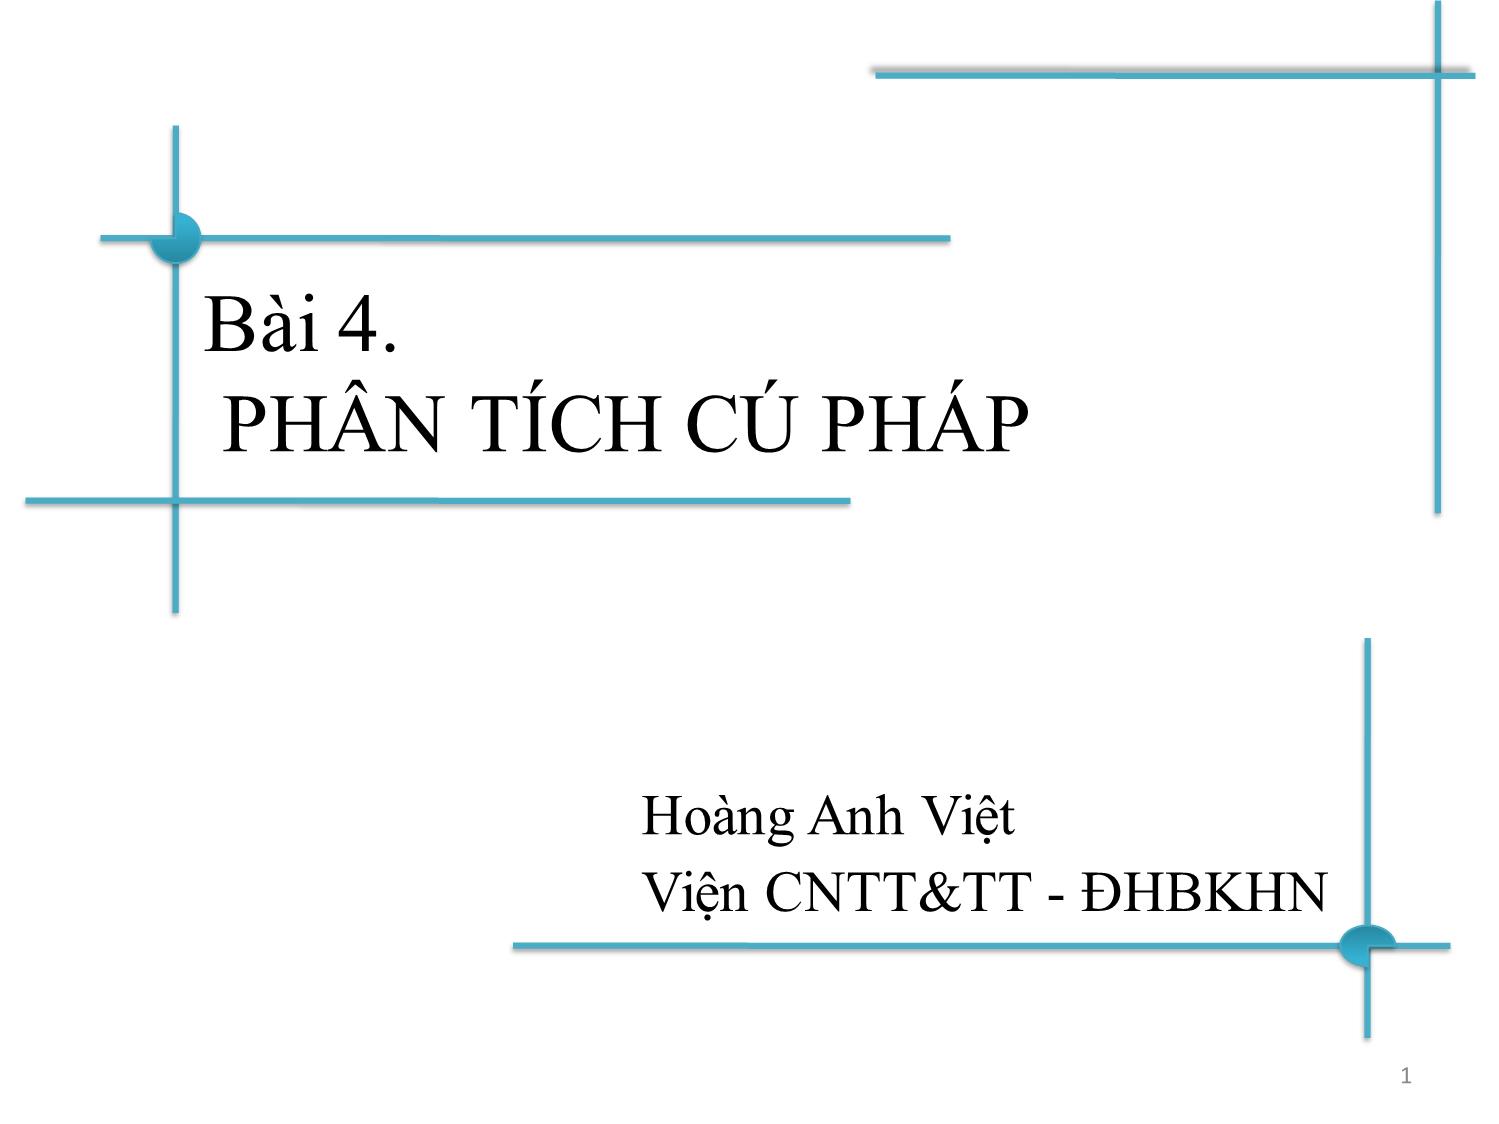 Bài giảng Chương trình dịch - Bài 3: Phân tích cú pháp từ trên xuống - Hoàng Anh Việt trang 1